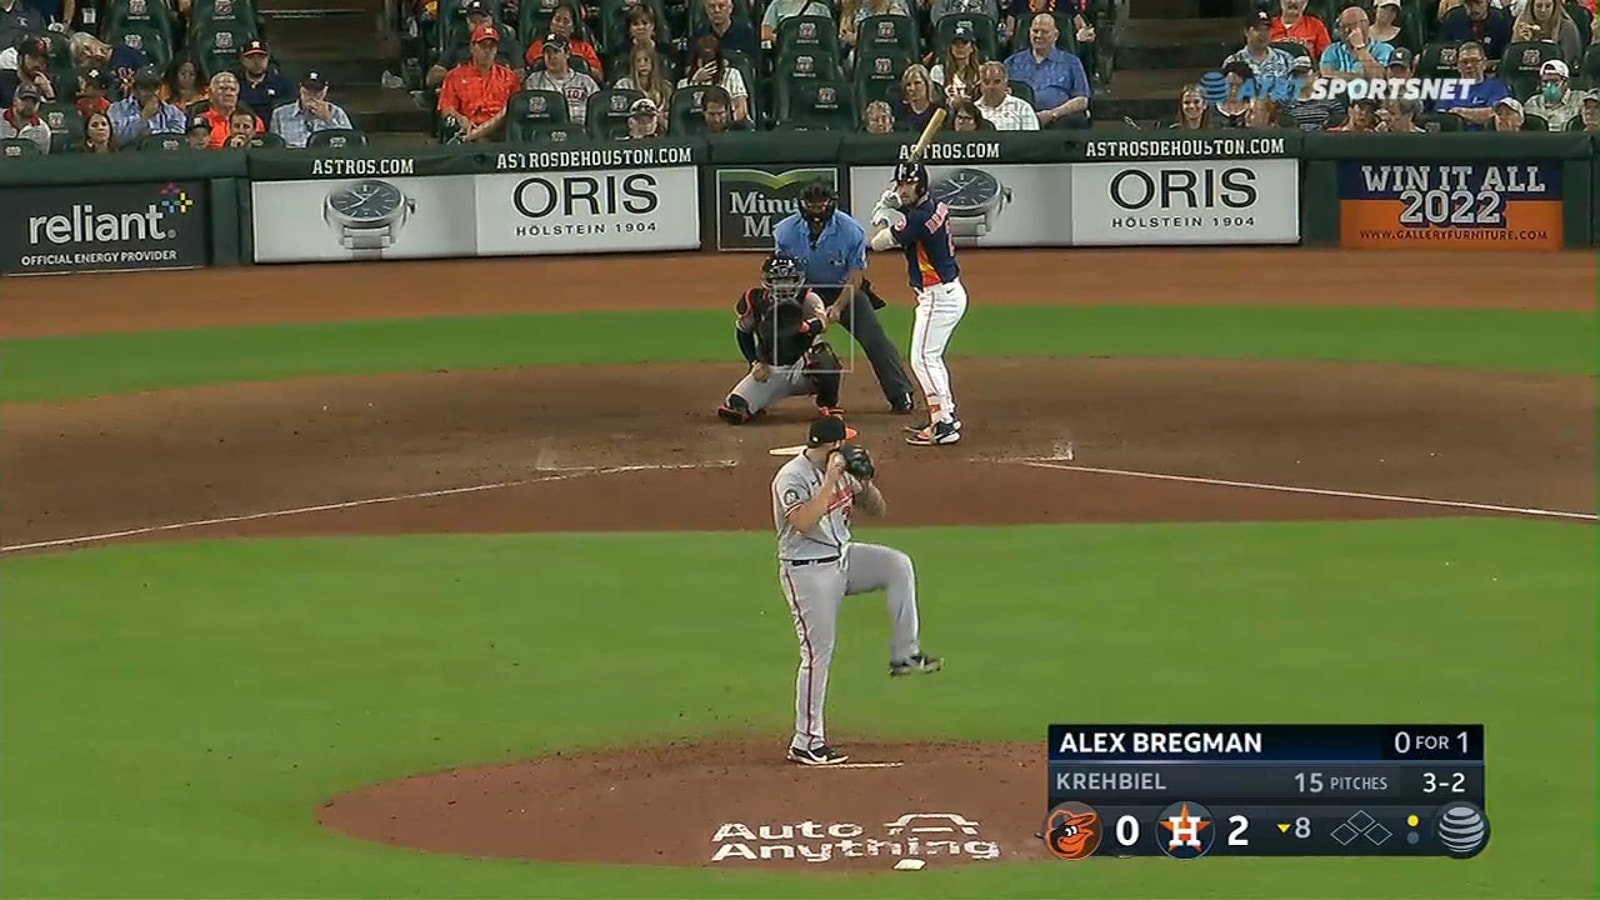 Alex Bregman's solo homer headlines Astros' victory over Orioles